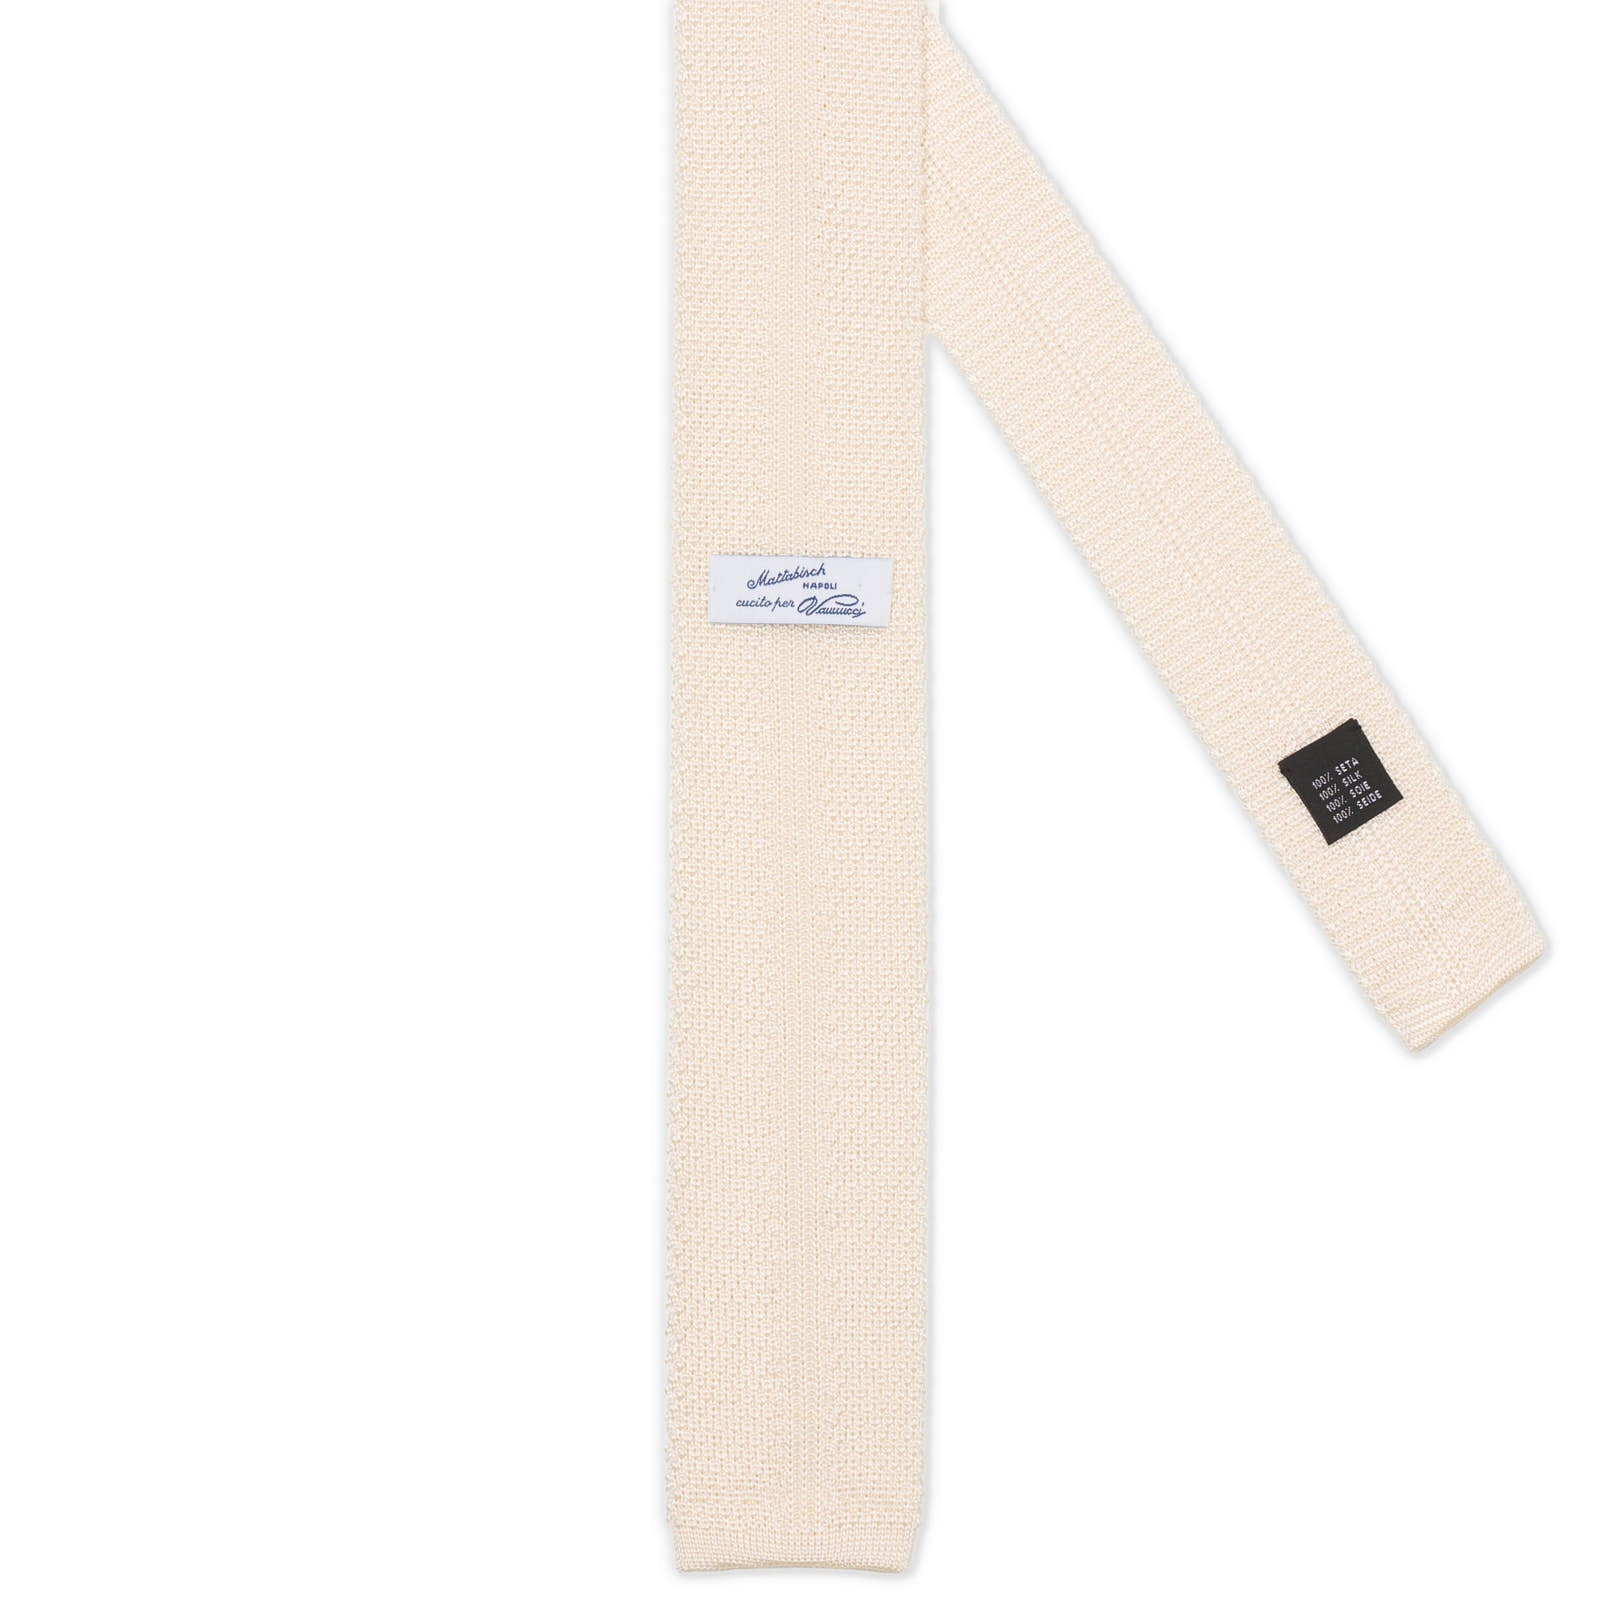 MATTABISCH FOR VANNUCI White Silk Knit Tie NEW